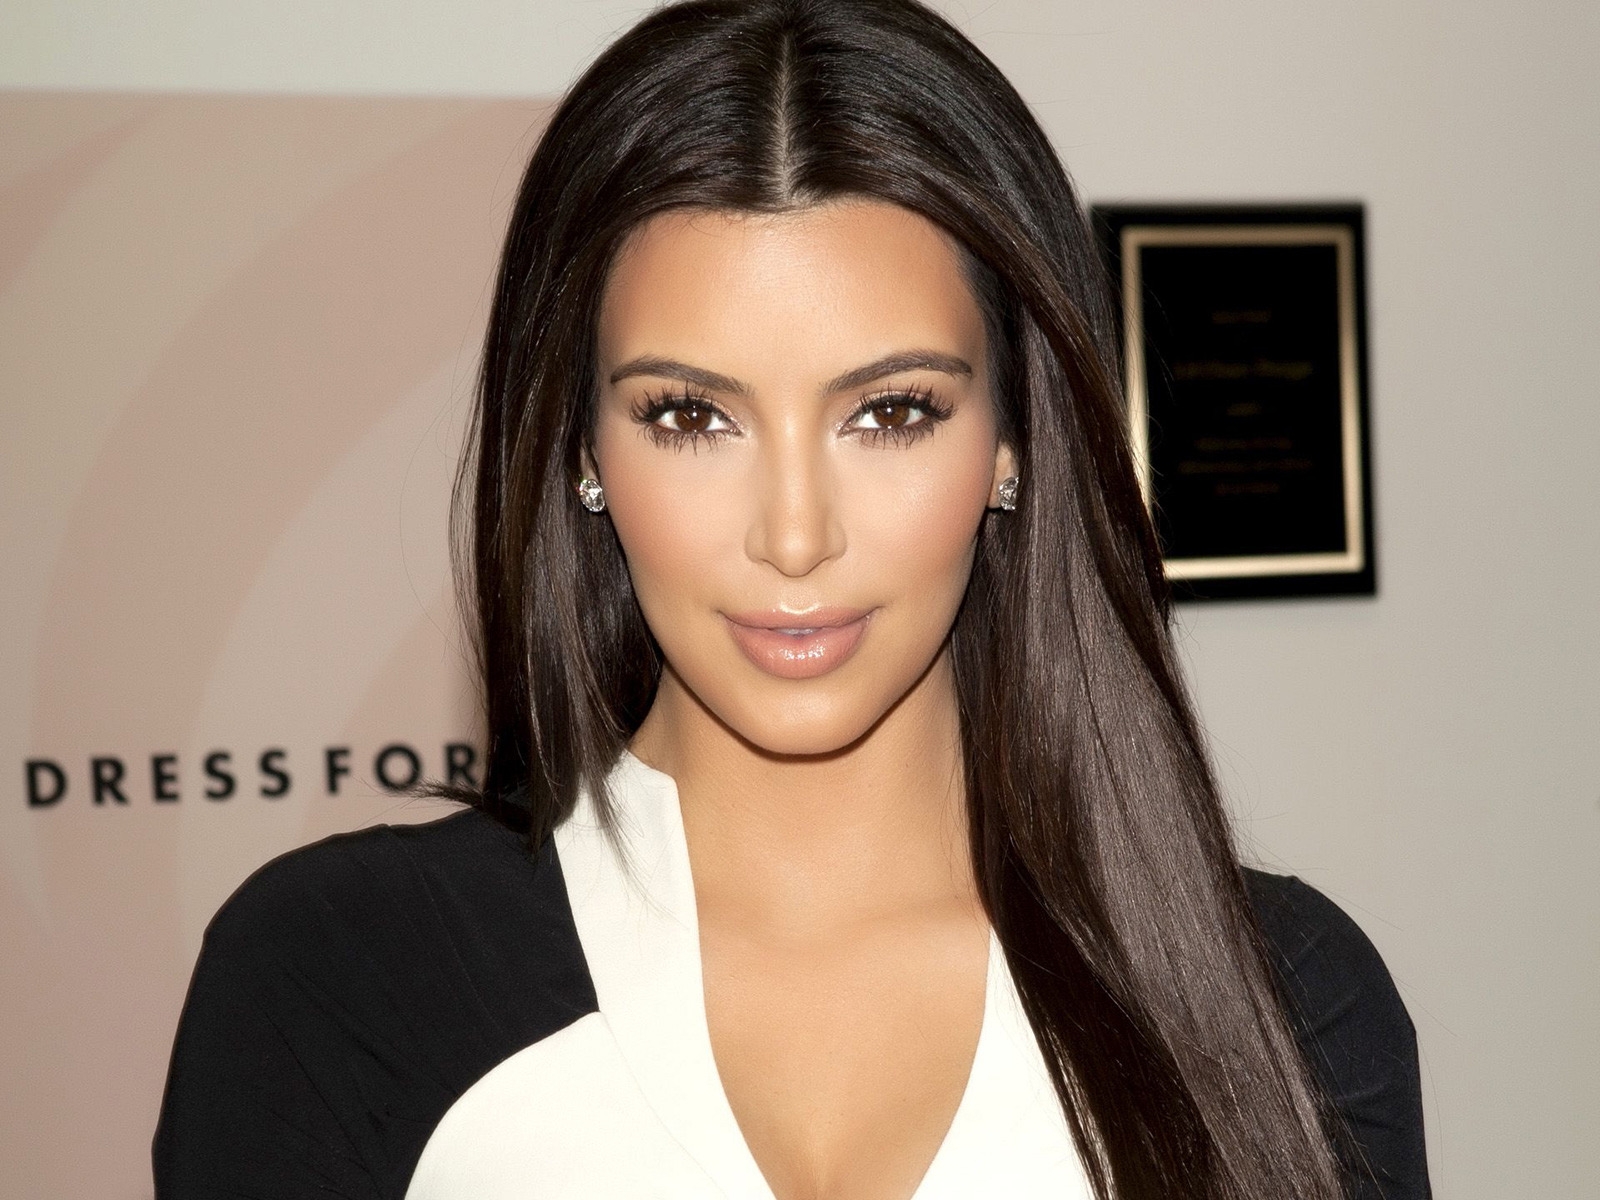 Gorgeous Kim Kardashian for 1600 x 1200 resolution